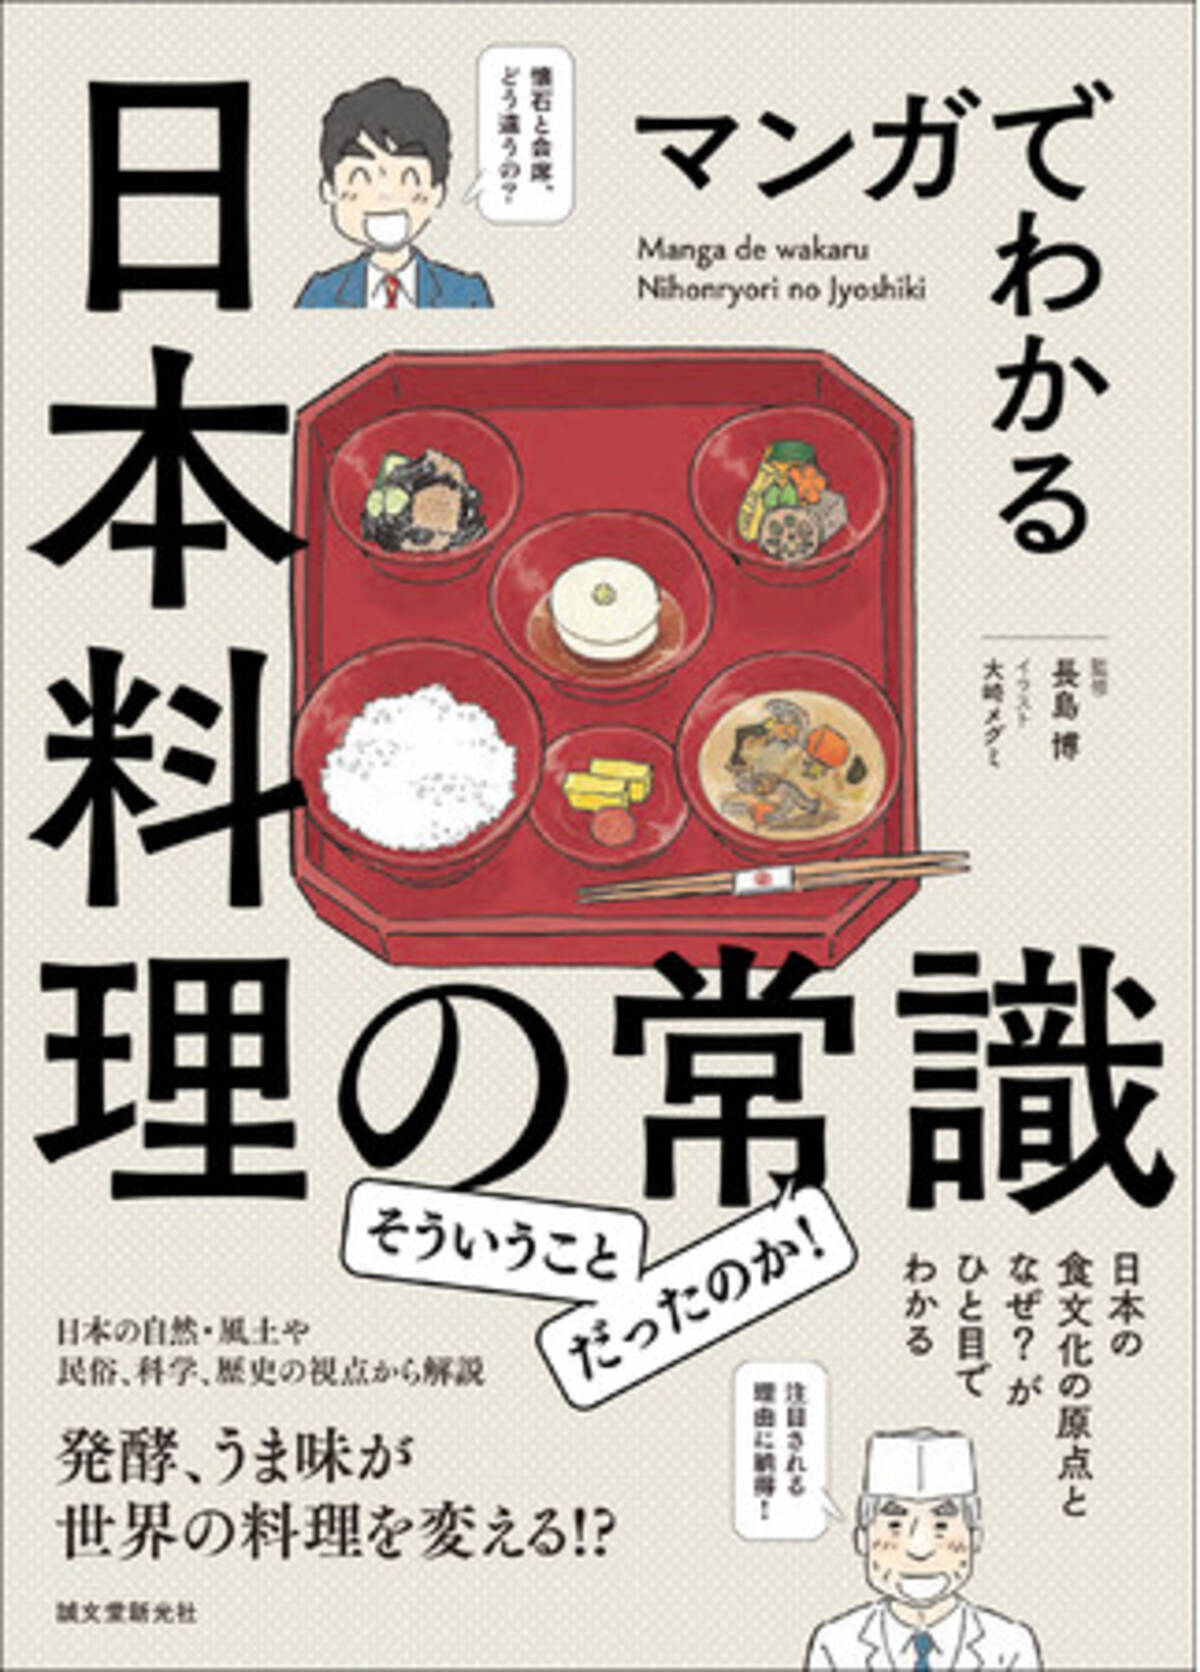 日本人も意外と知らない 日本食の常識をイラストと漫画で楽しく解説 日本食文化を決定づけた風土や歴史を学べる一冊 21年3月29日 エキサイトニュース